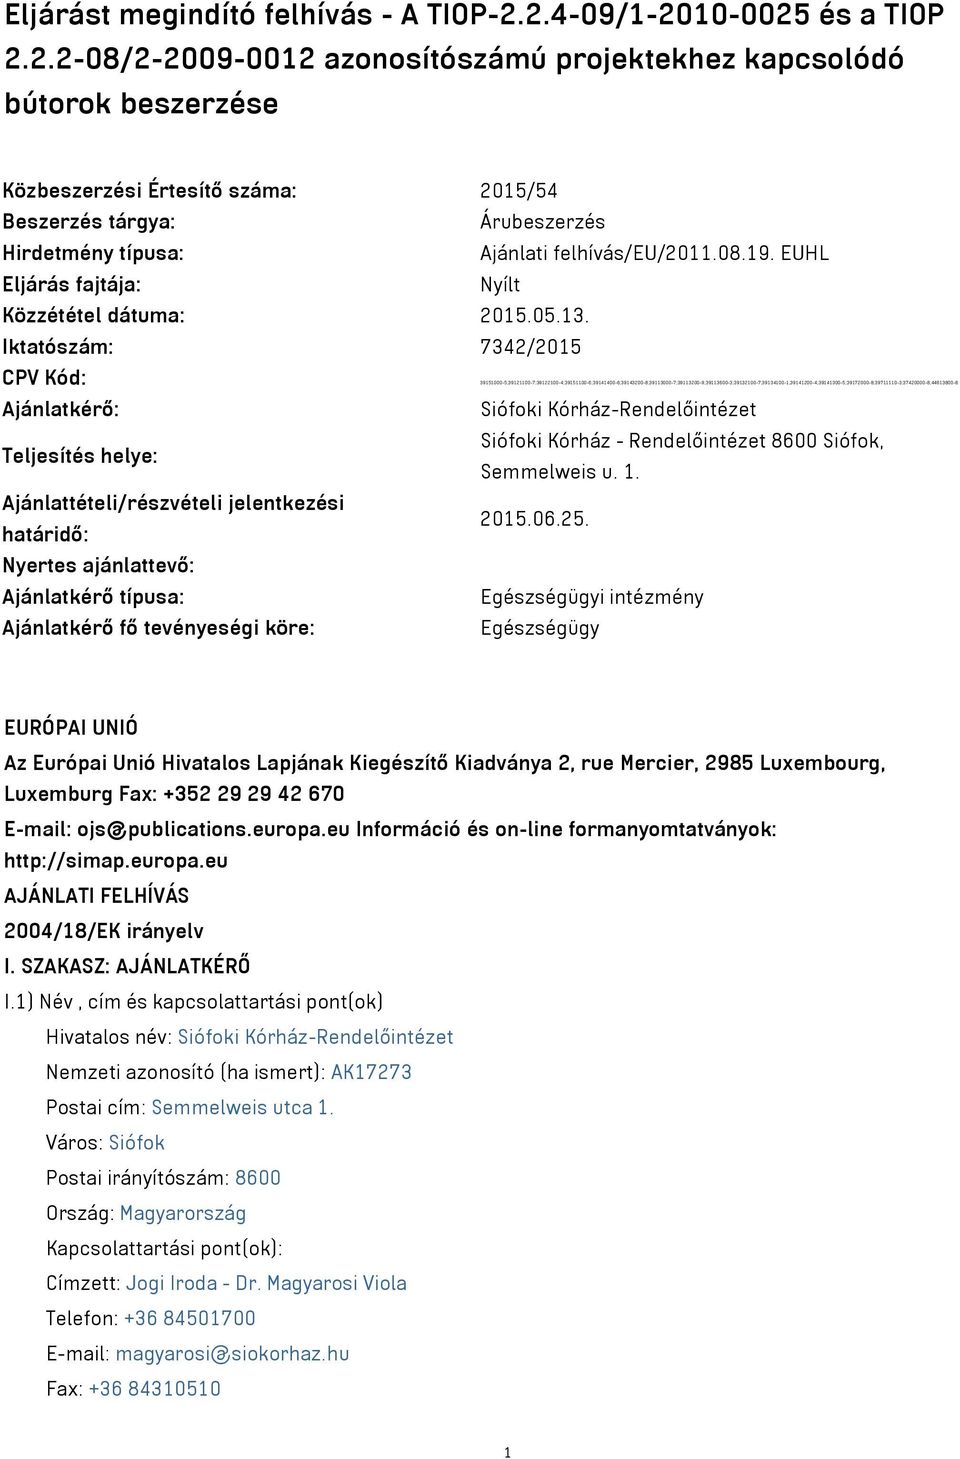 08.19. EUHL Eljárás fajtája: Nyílt Közzététel dátuma: 2015.05.13.